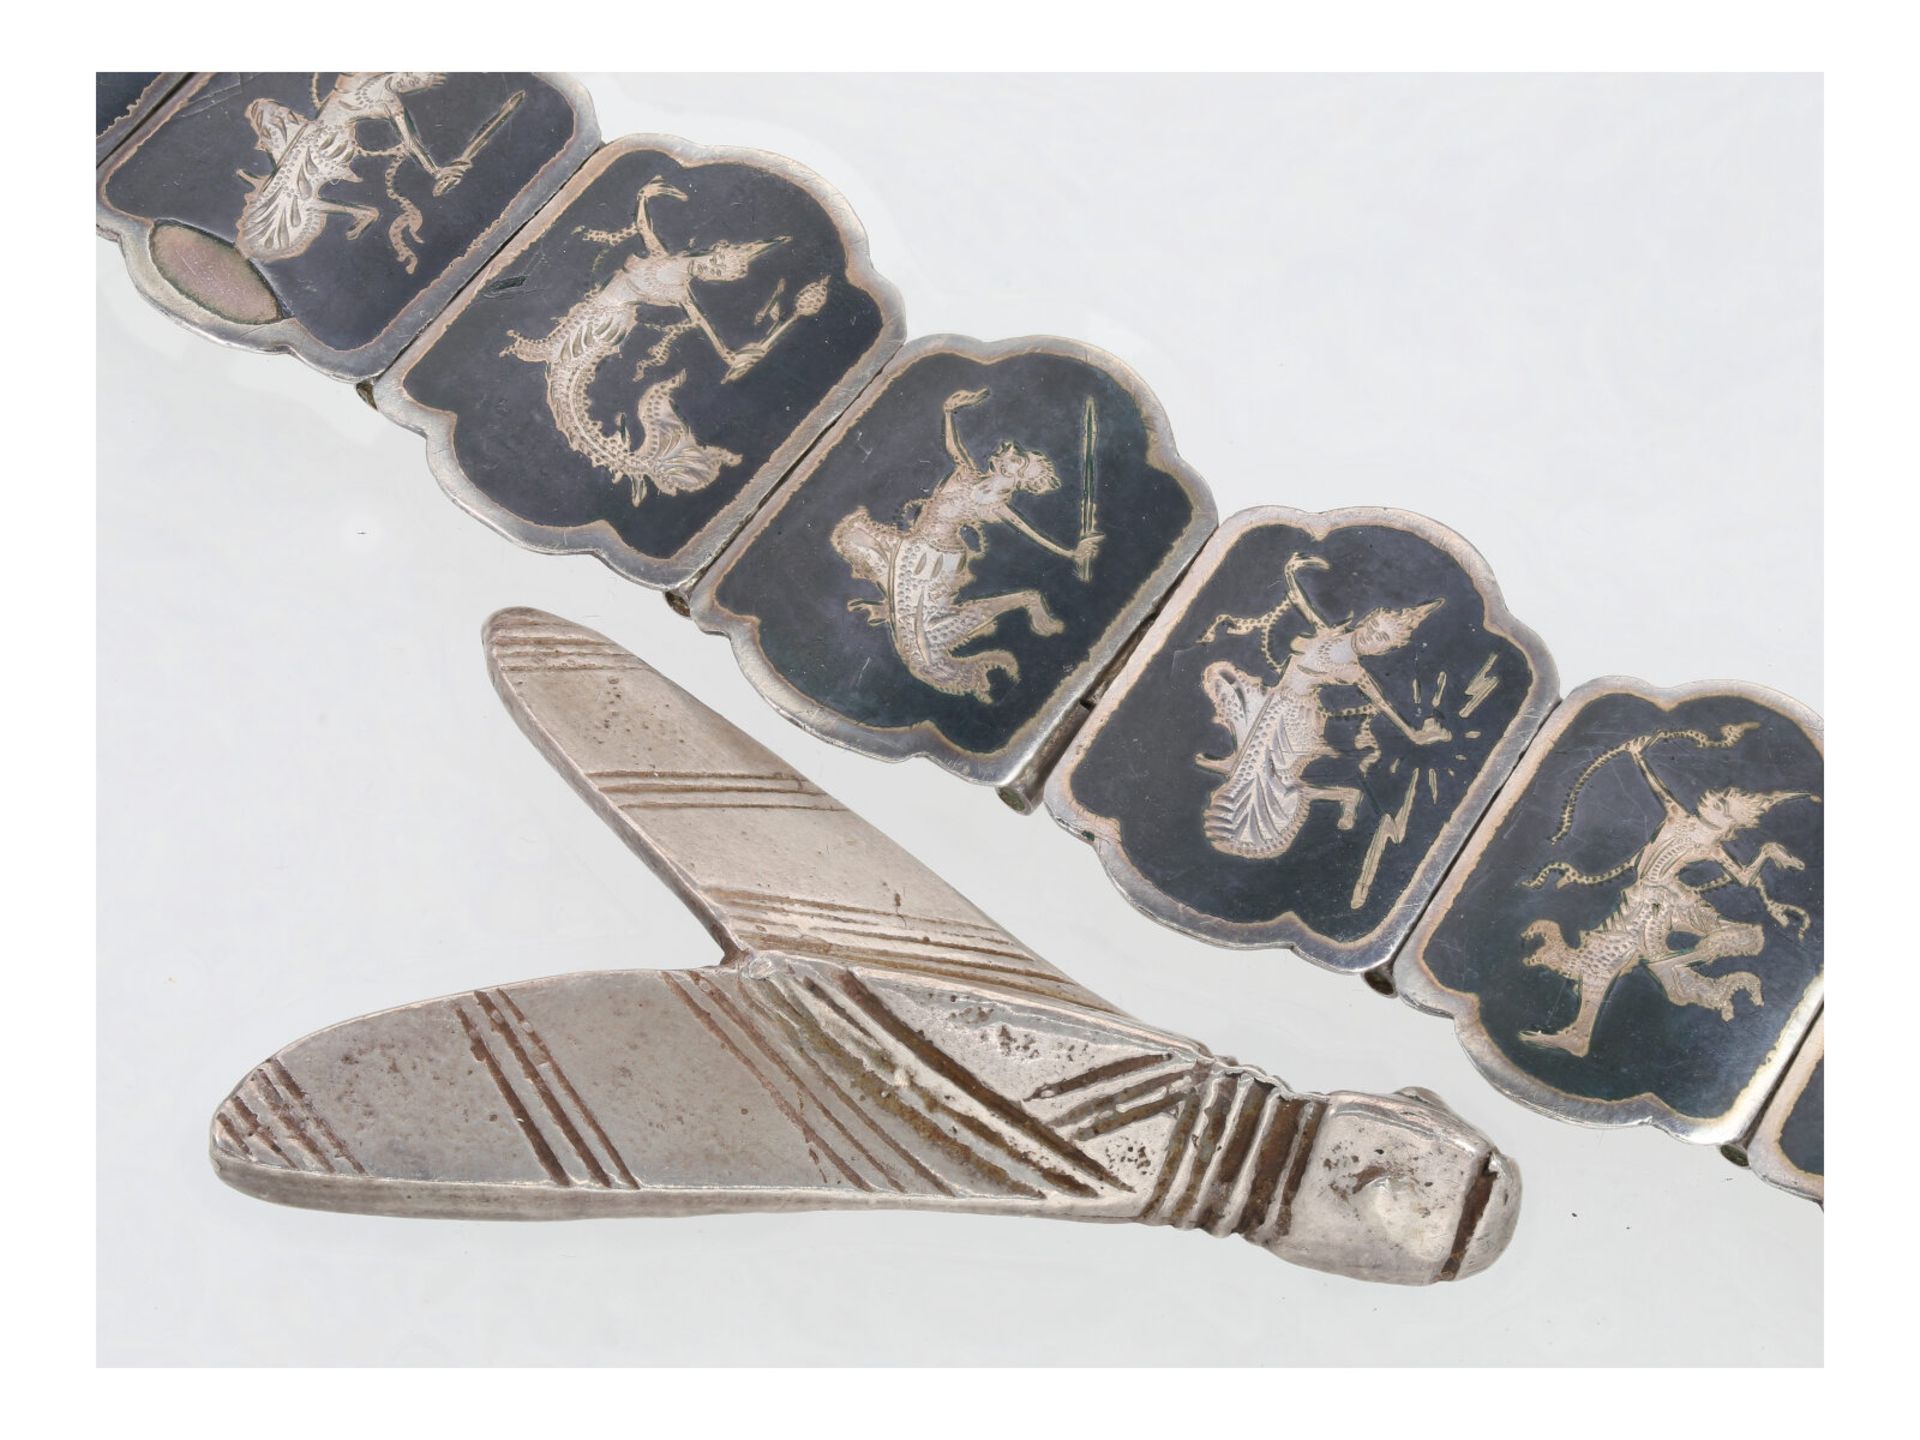 Armband/Brosche: seltene Art déco Brosche Motiv "Nachtfalter" sowie ein altes asiatisches Silber-Arm - Image 2 of 4